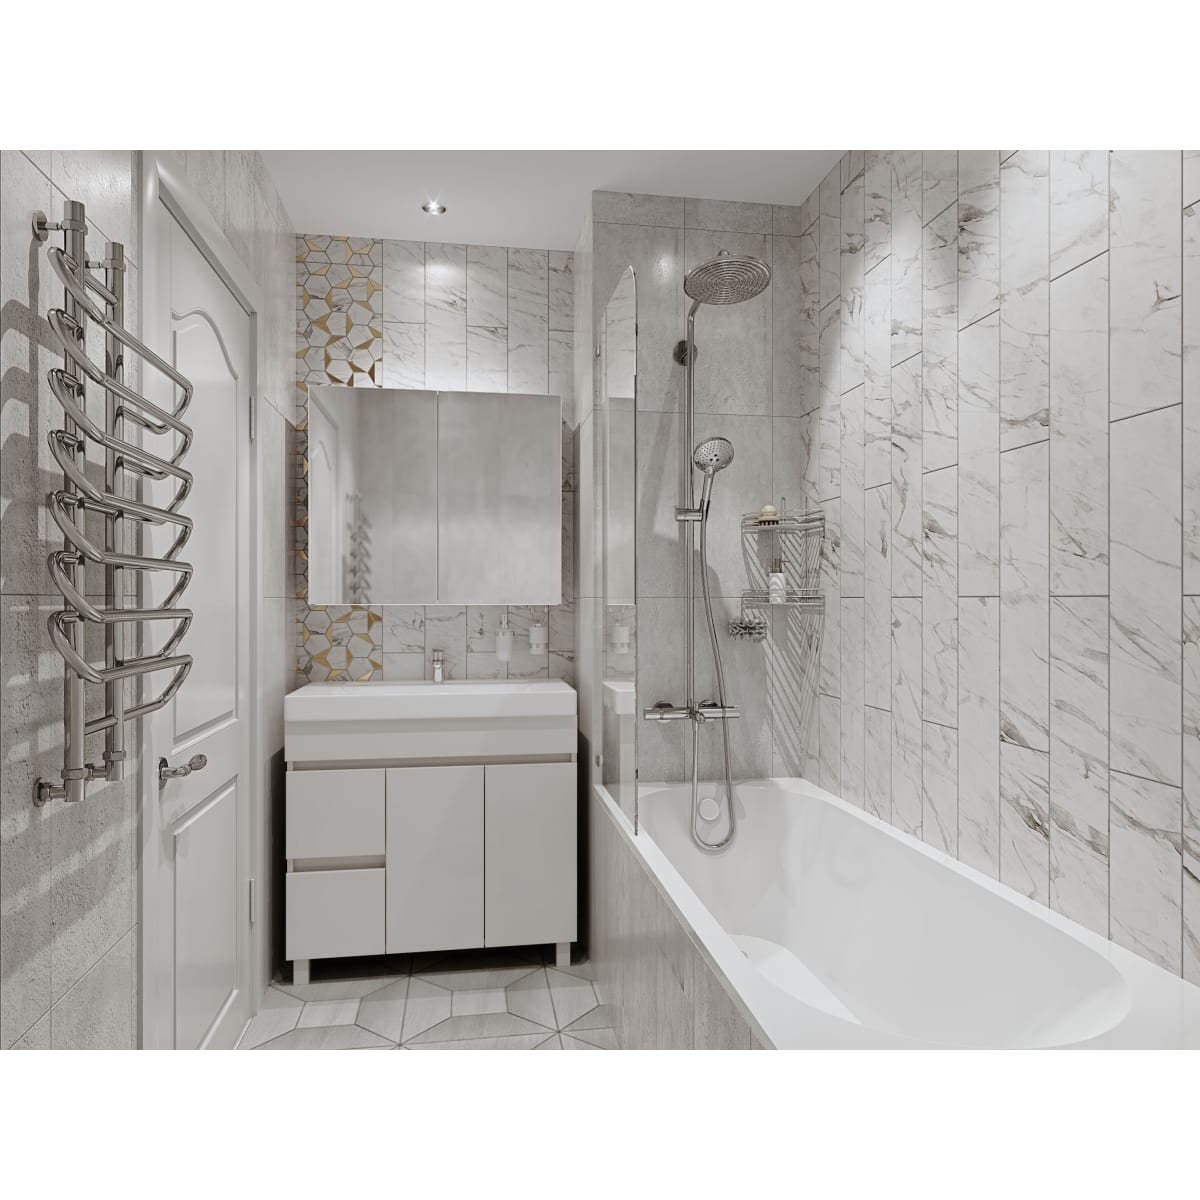 Дизайн ванной комнаты леруа мерлен